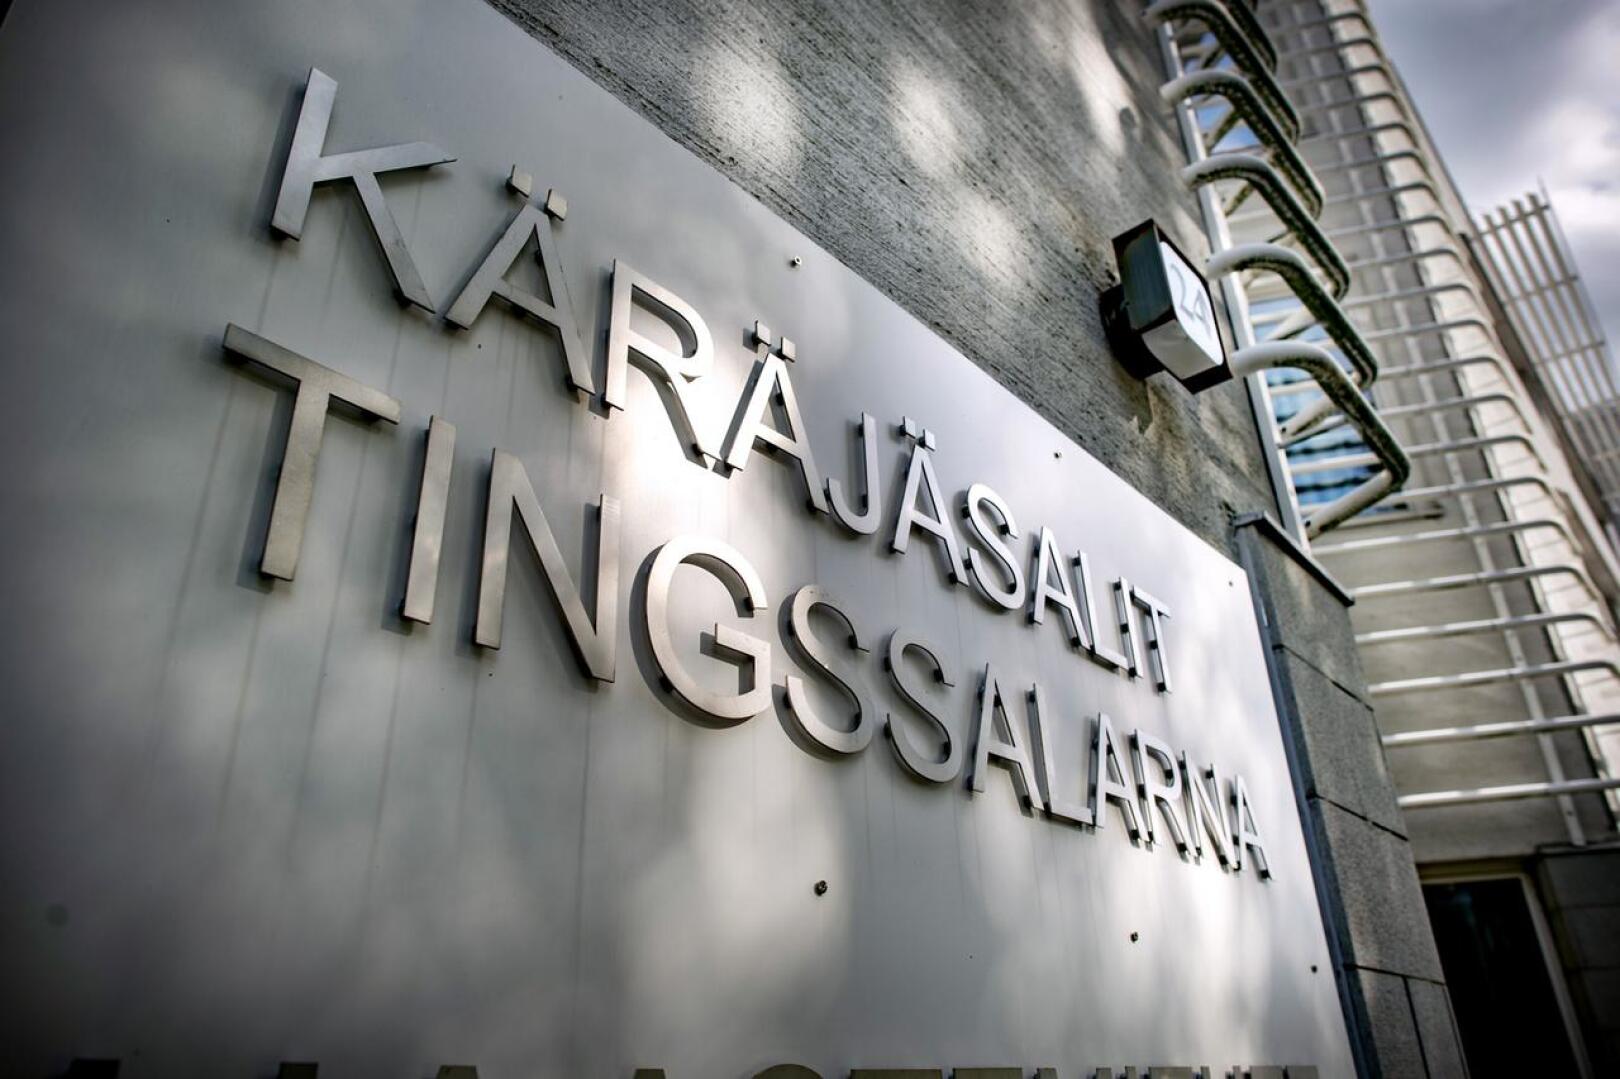 Pohjanmaan käräjäoikeuden Kokkolan yksikössä käsiteltiin talousrikosta, jossa rakennusalan yrittäjä tuomittiin vuoden ja 11 kuukauden vankeuteen.